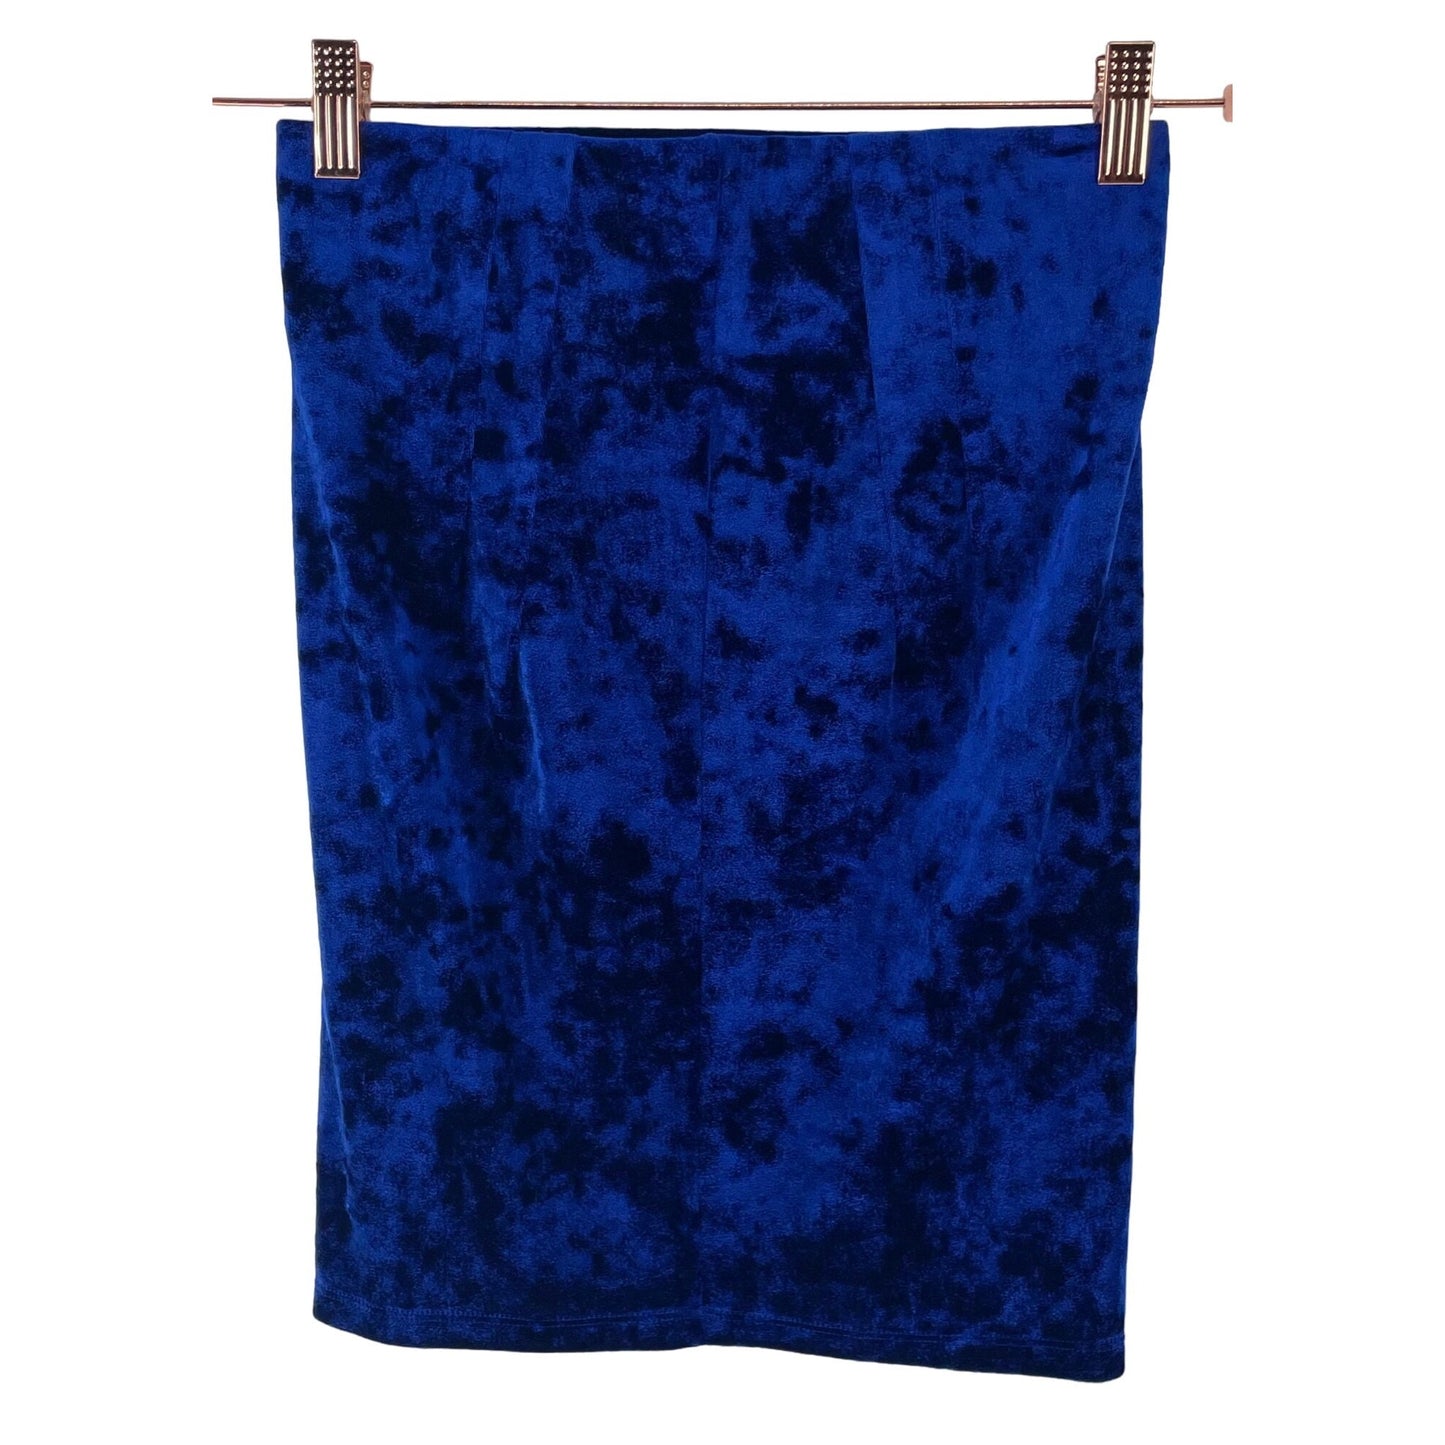 NWOT Forever 21 Women's Size Small Bodycon Cobalt Blue Crushed Velvet/Velour Midi Skirt